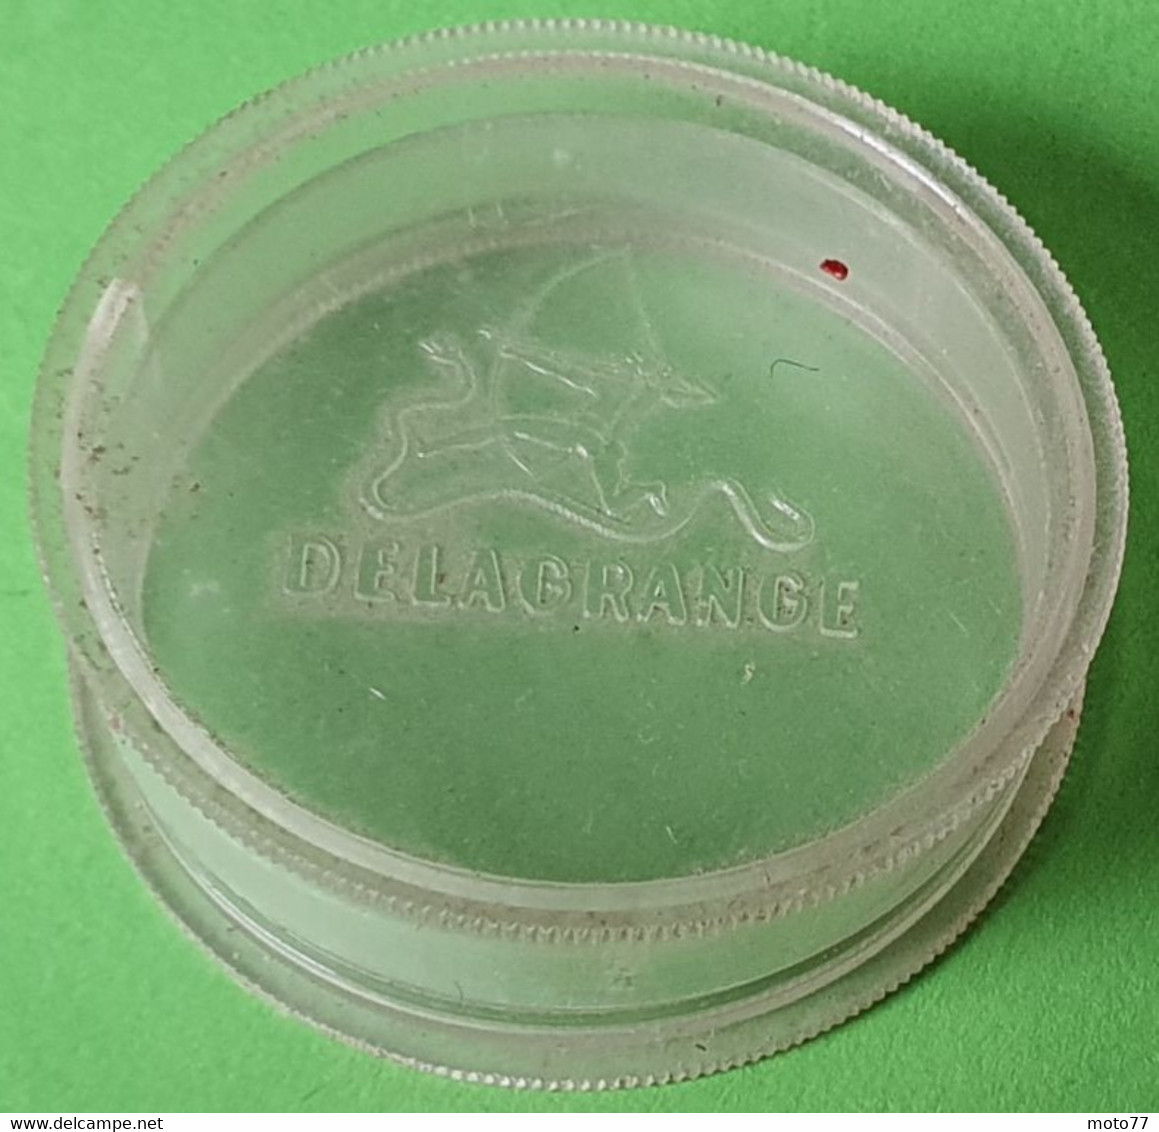 Ancienne Boite Plastique Ovale - Médicament DELAGRANGE - Tireur Arc Serpent - Publicité Médicale Laboratoire - Vers 1960 - Boîtes